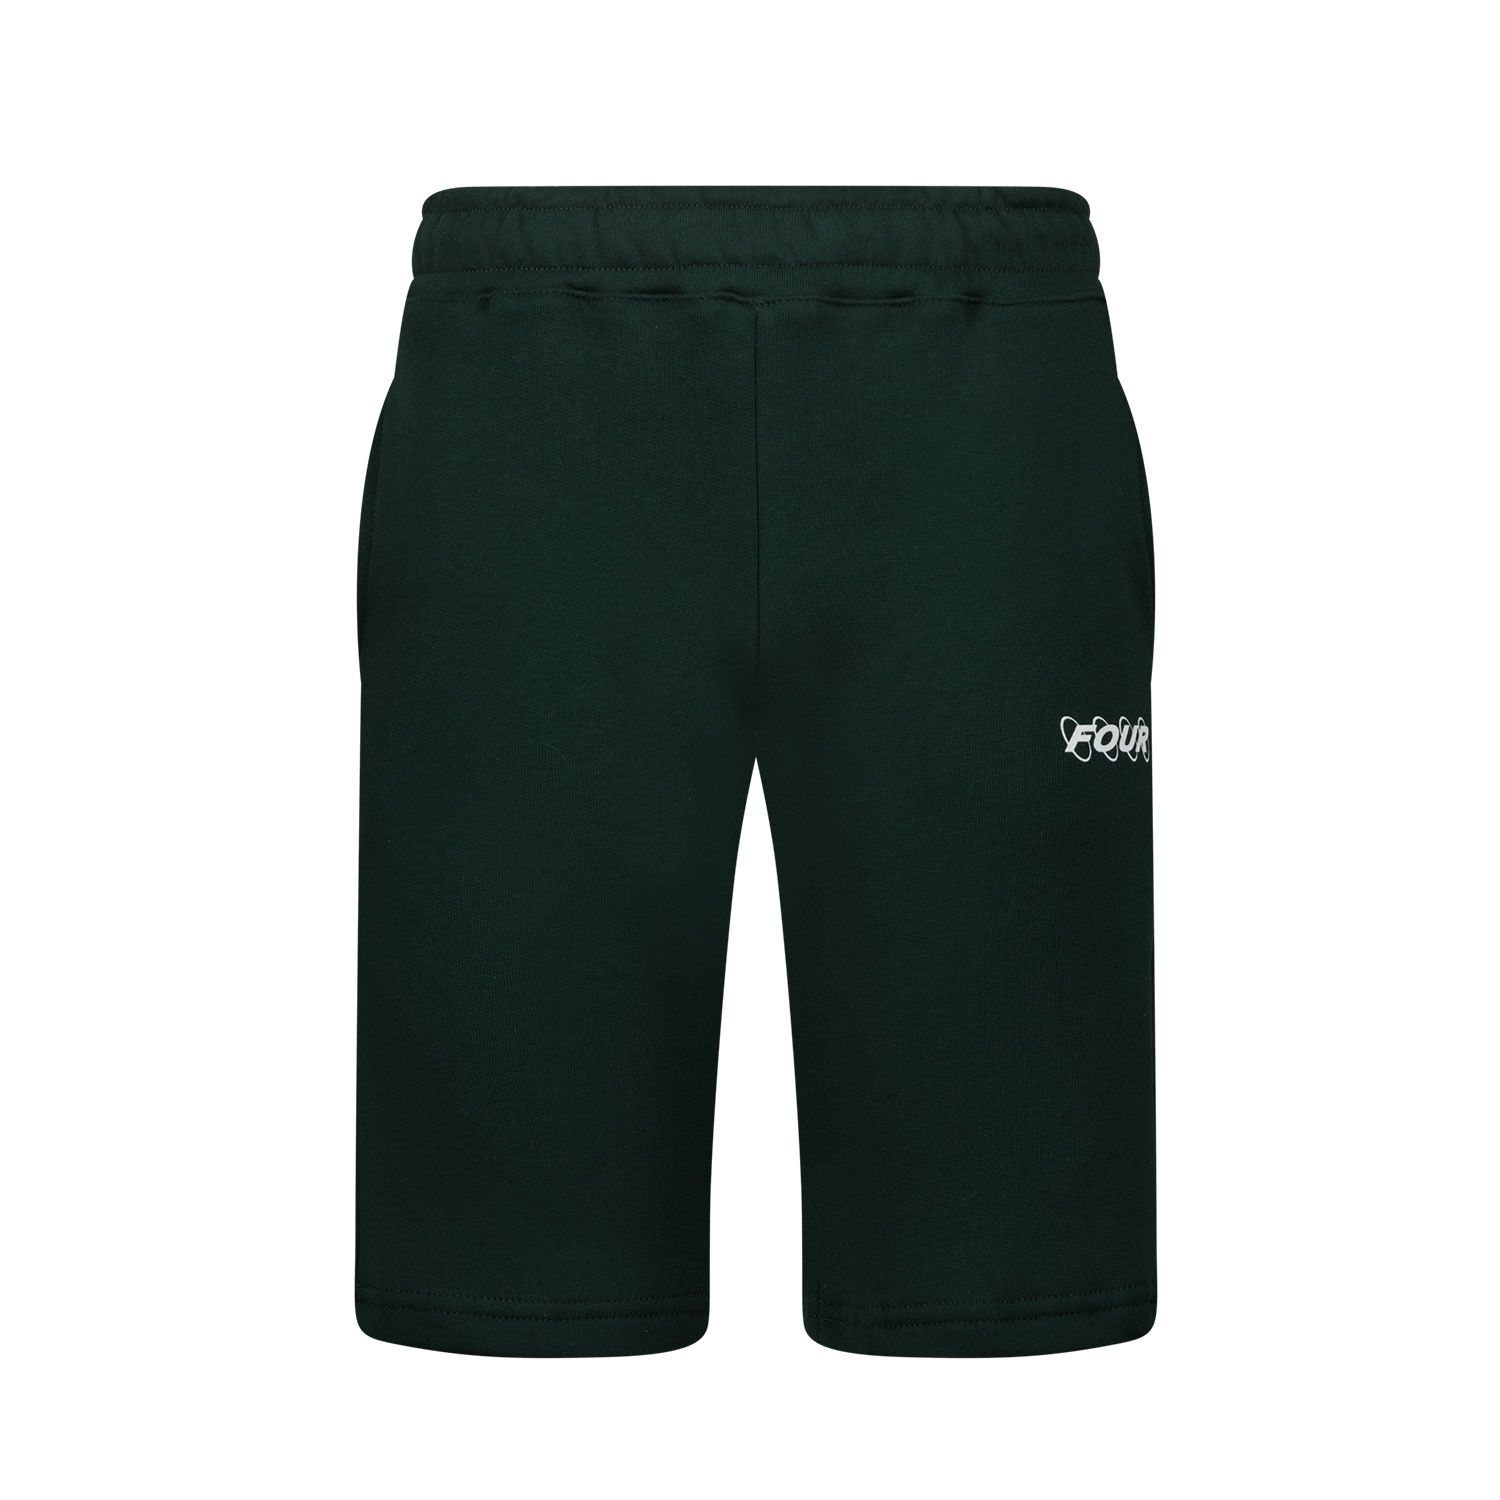 Afbeelding van Four SHORT CRCLS kinder shorts donker groen